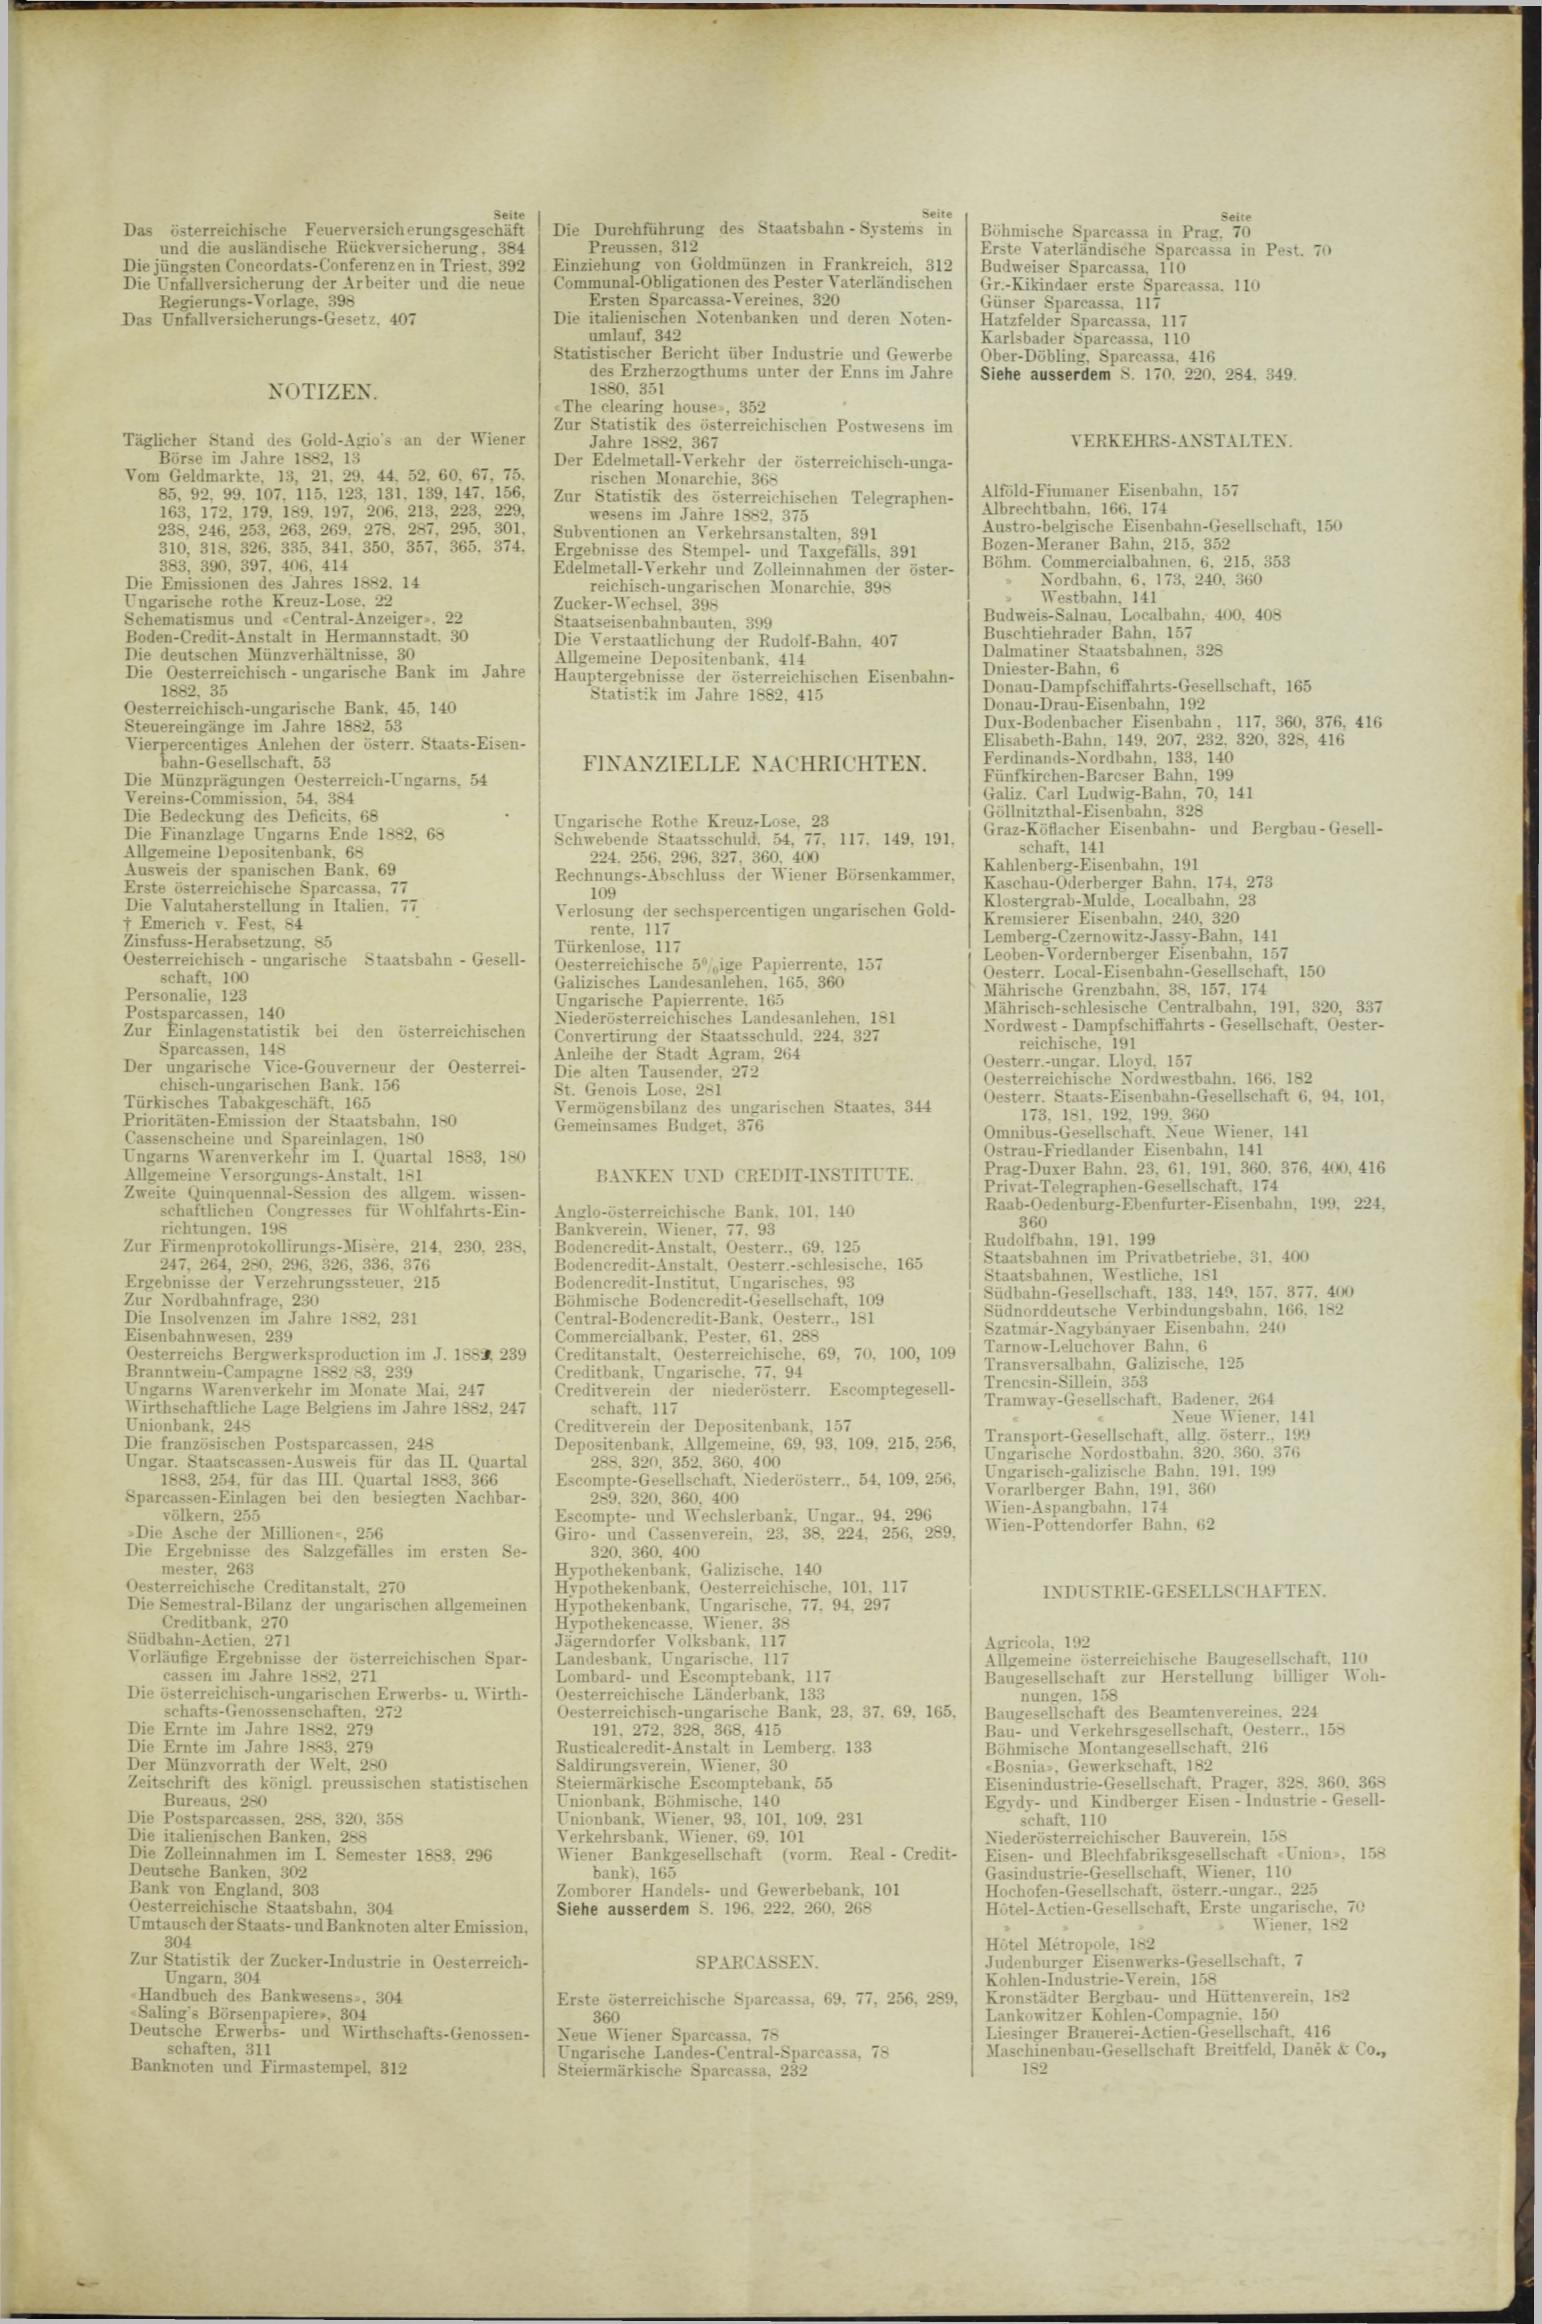 Der Tresor 12.04.1883 - Seite 11